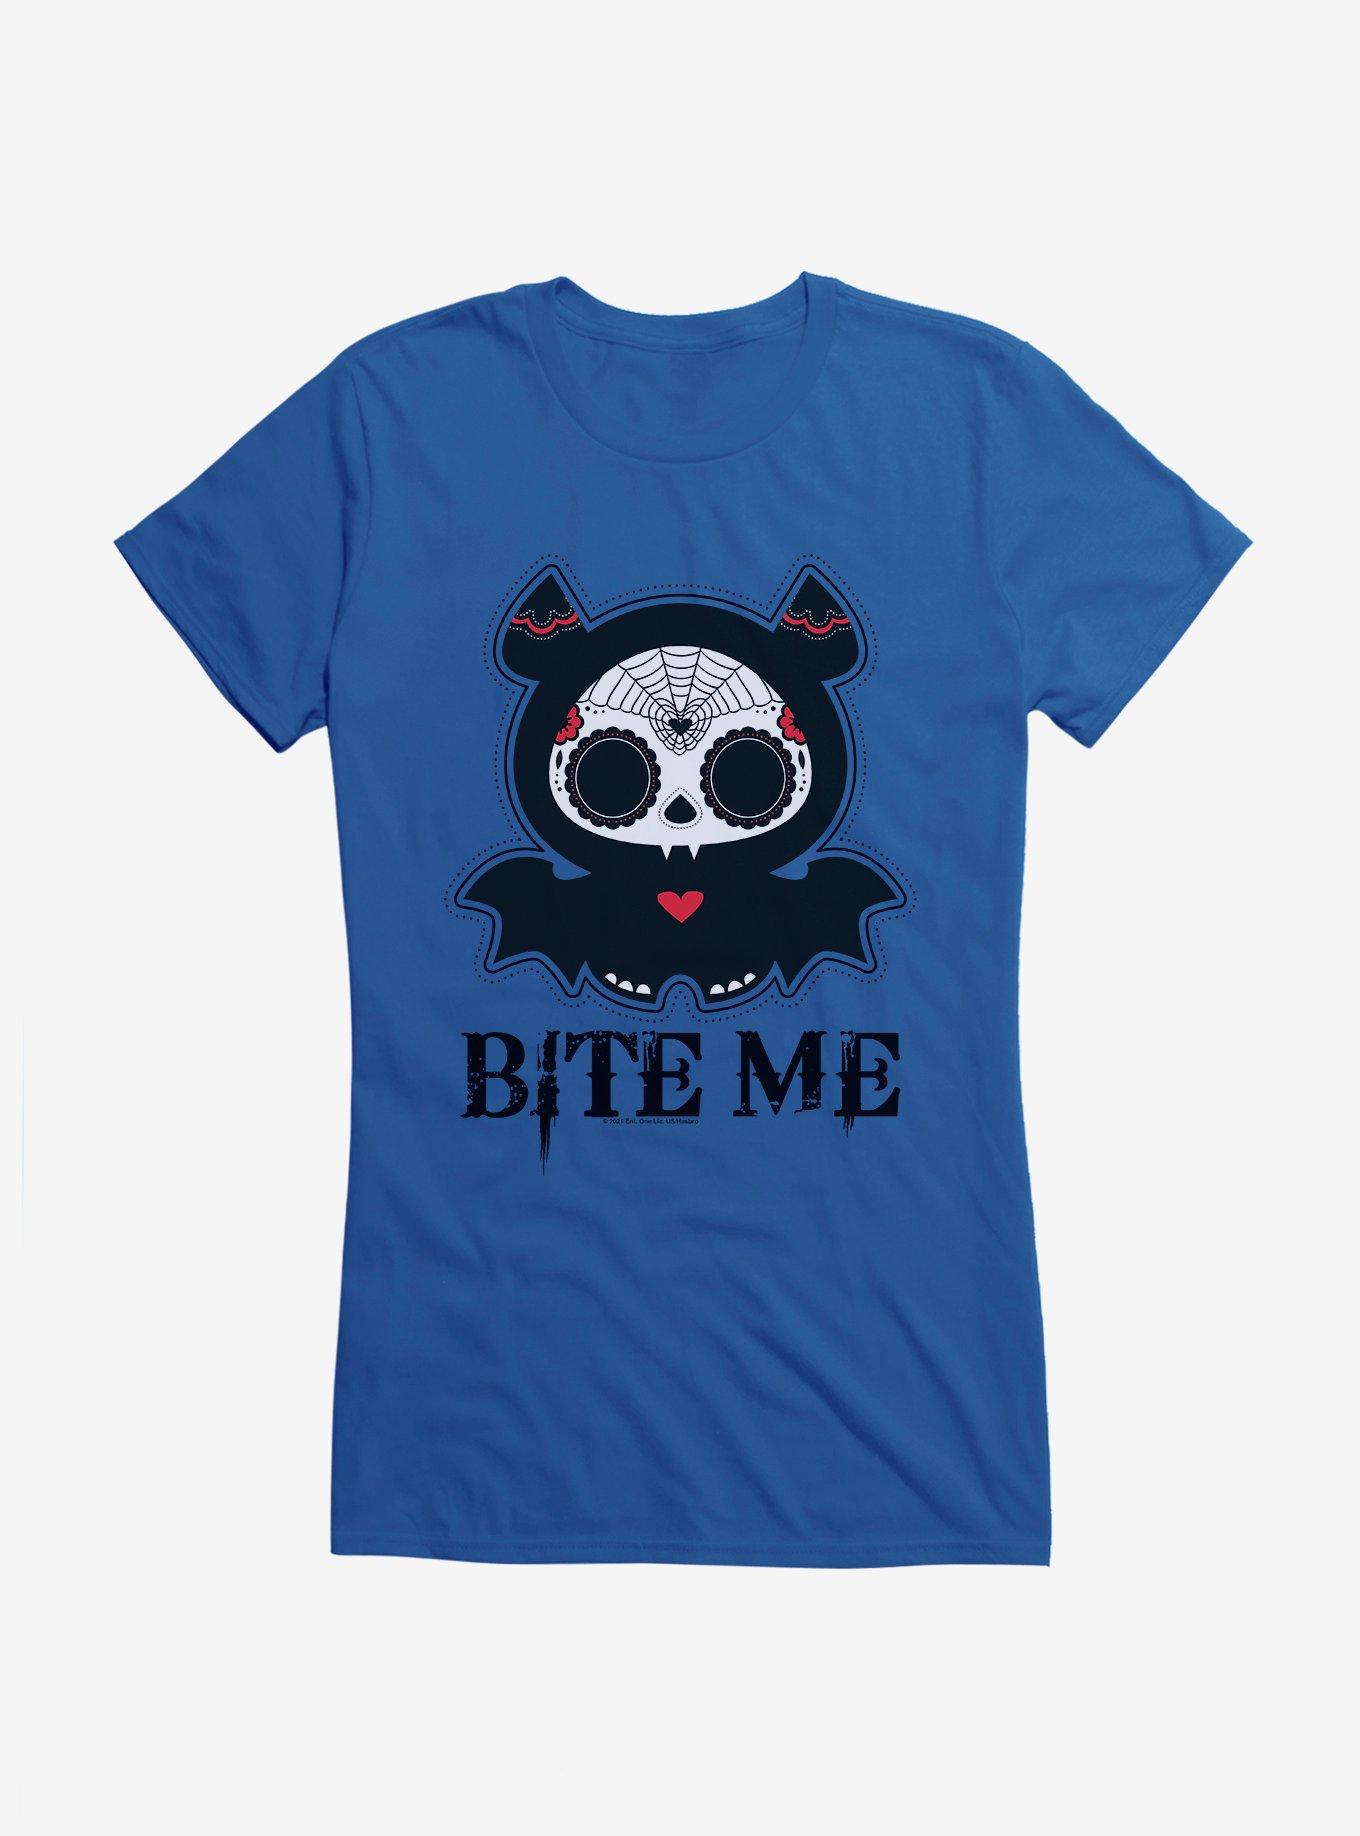 Skelanimals Bite Me Girls T-Shirt